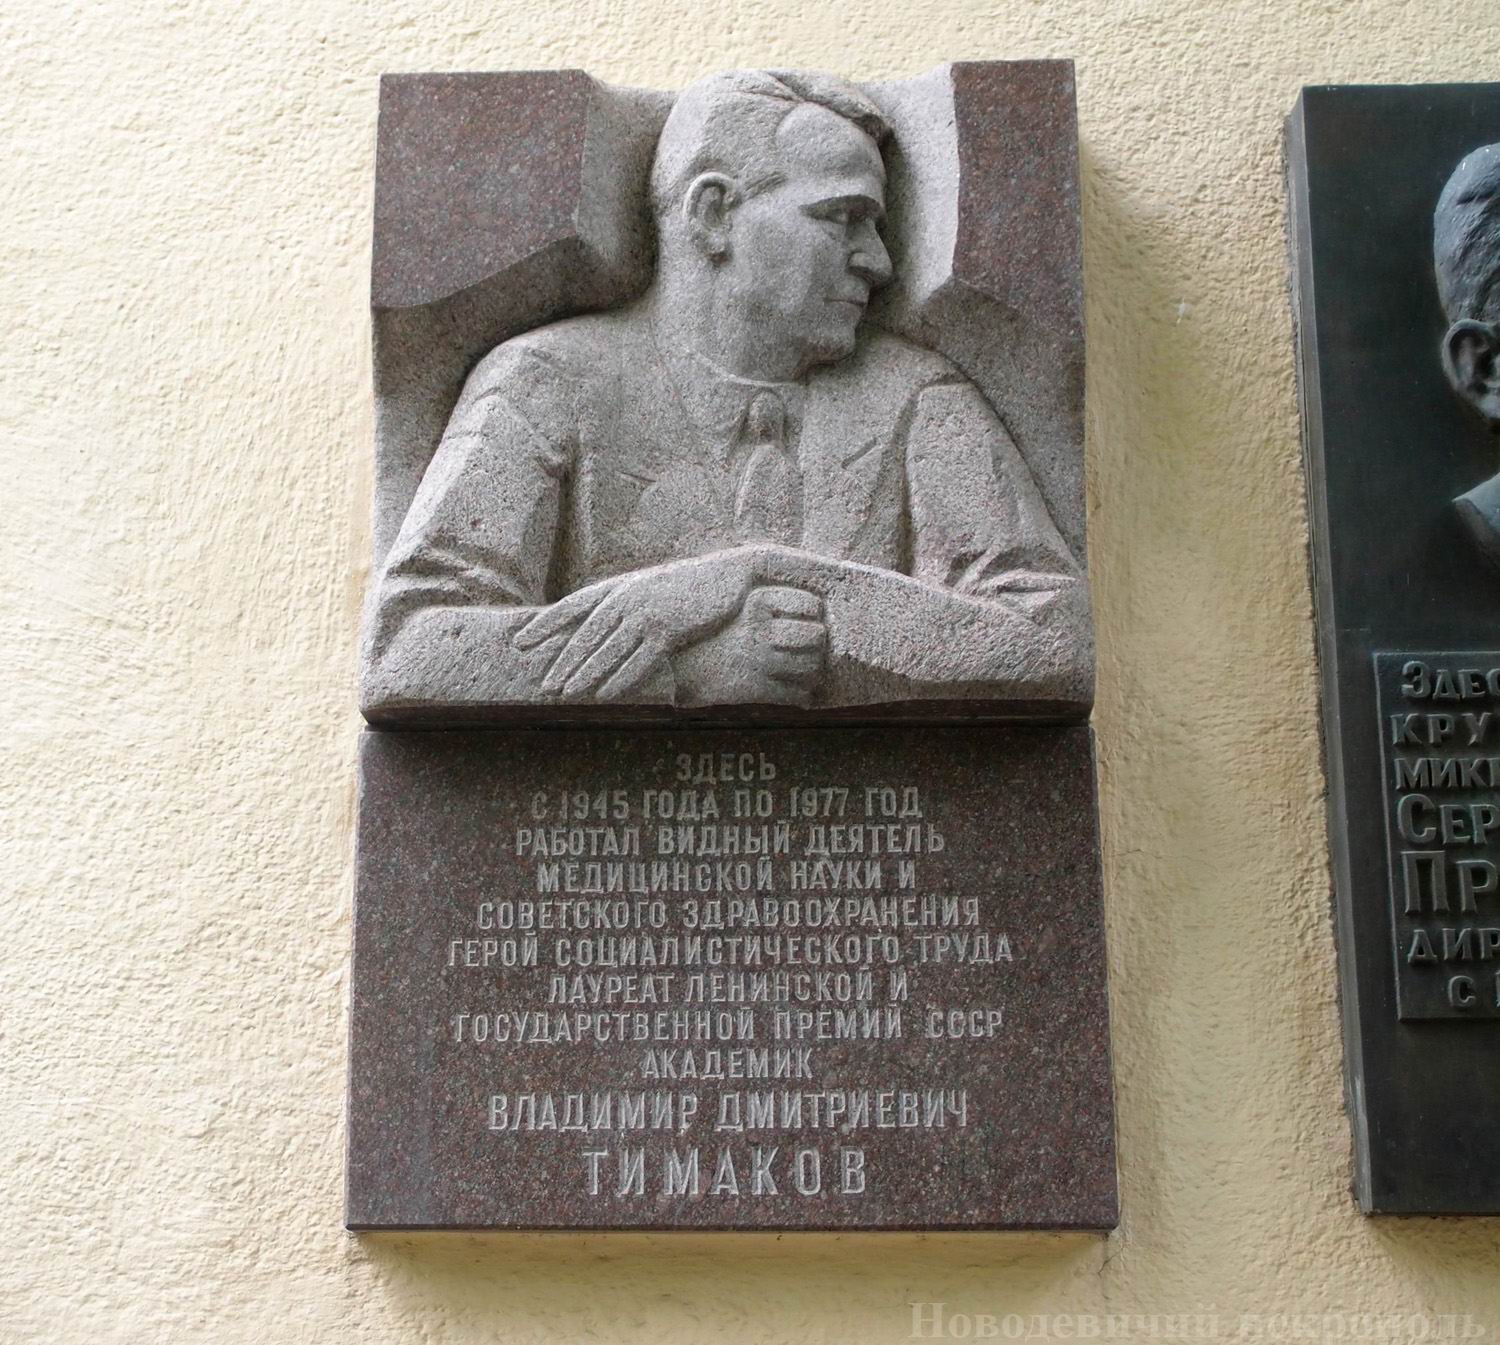 Мемориальная доска Тимакову В.Д. (1905–1977), ск. М.Н.Смирнов, арх. С.В.Клепиков, на улице Гамалеи, дом 18, открыта 6.6.1980.